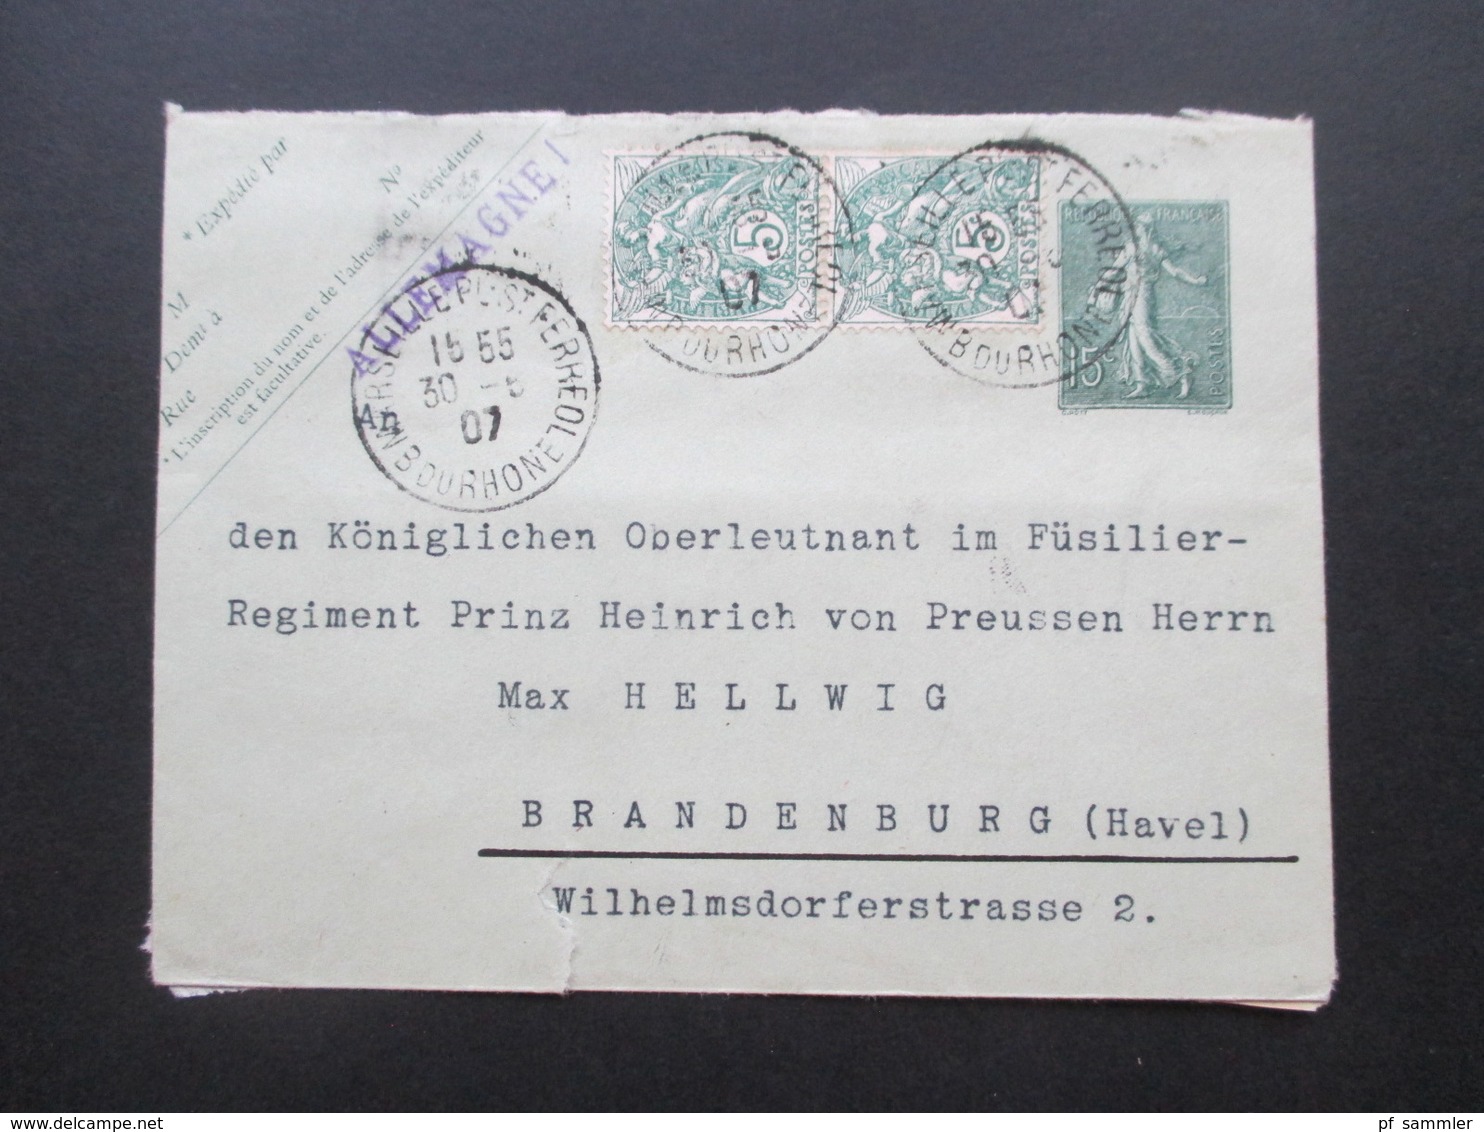 Frankreich 1907 GA Umschlag 2 Zusatzfrankaturen An: Königl. Oberleutnant Im Füssilier Reg. Prinz Heinrich Von Preussen - Covers & Documents